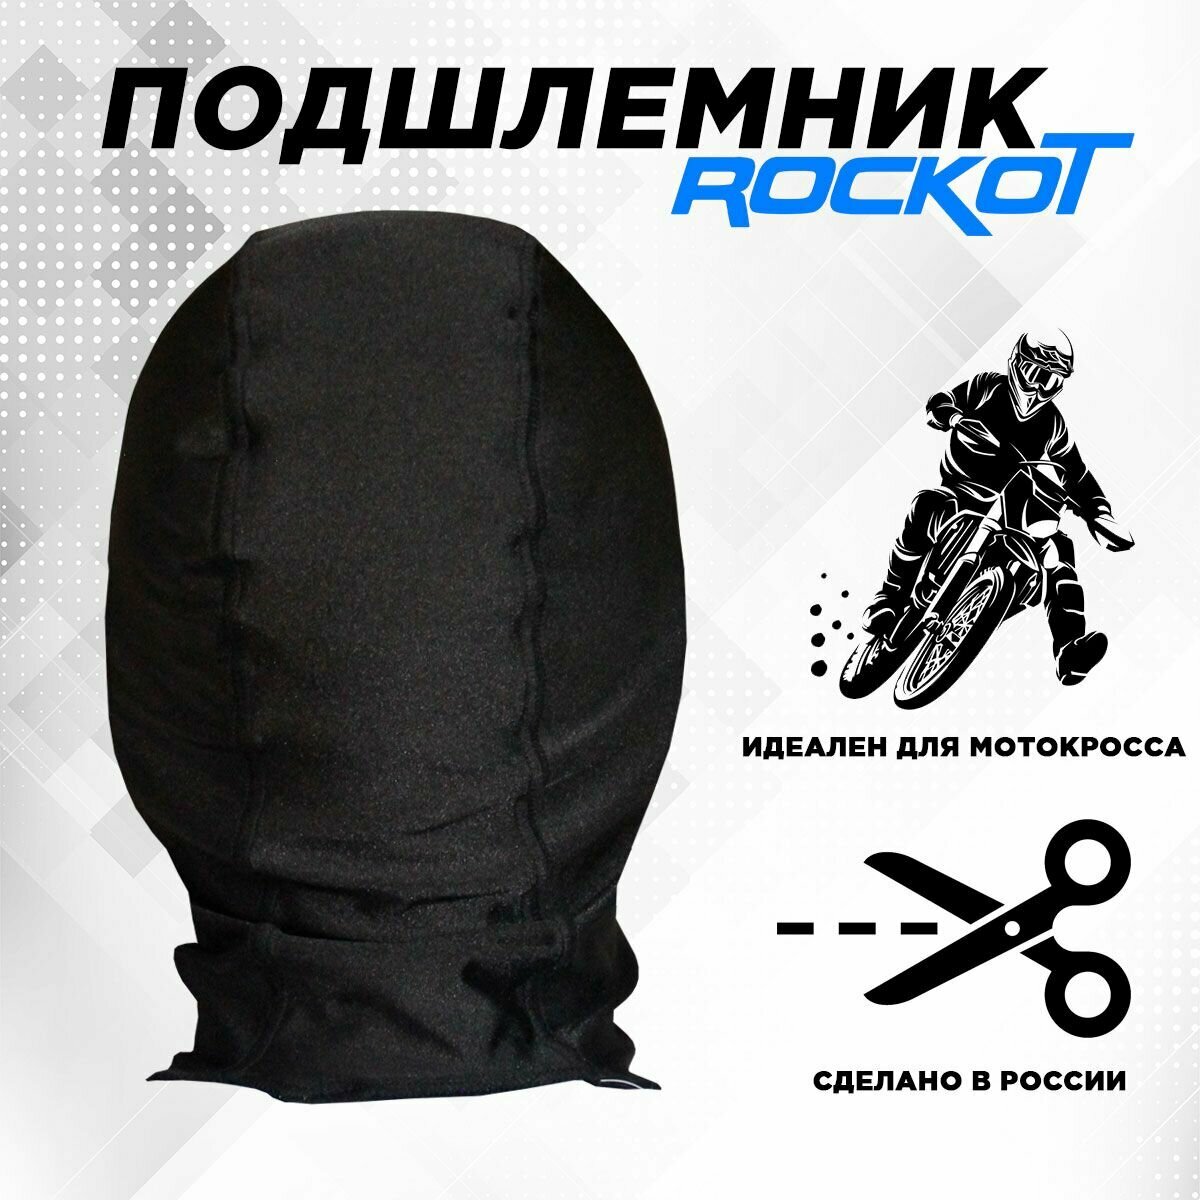 Подшлемник ROCKOT (размер 56-58 черный)